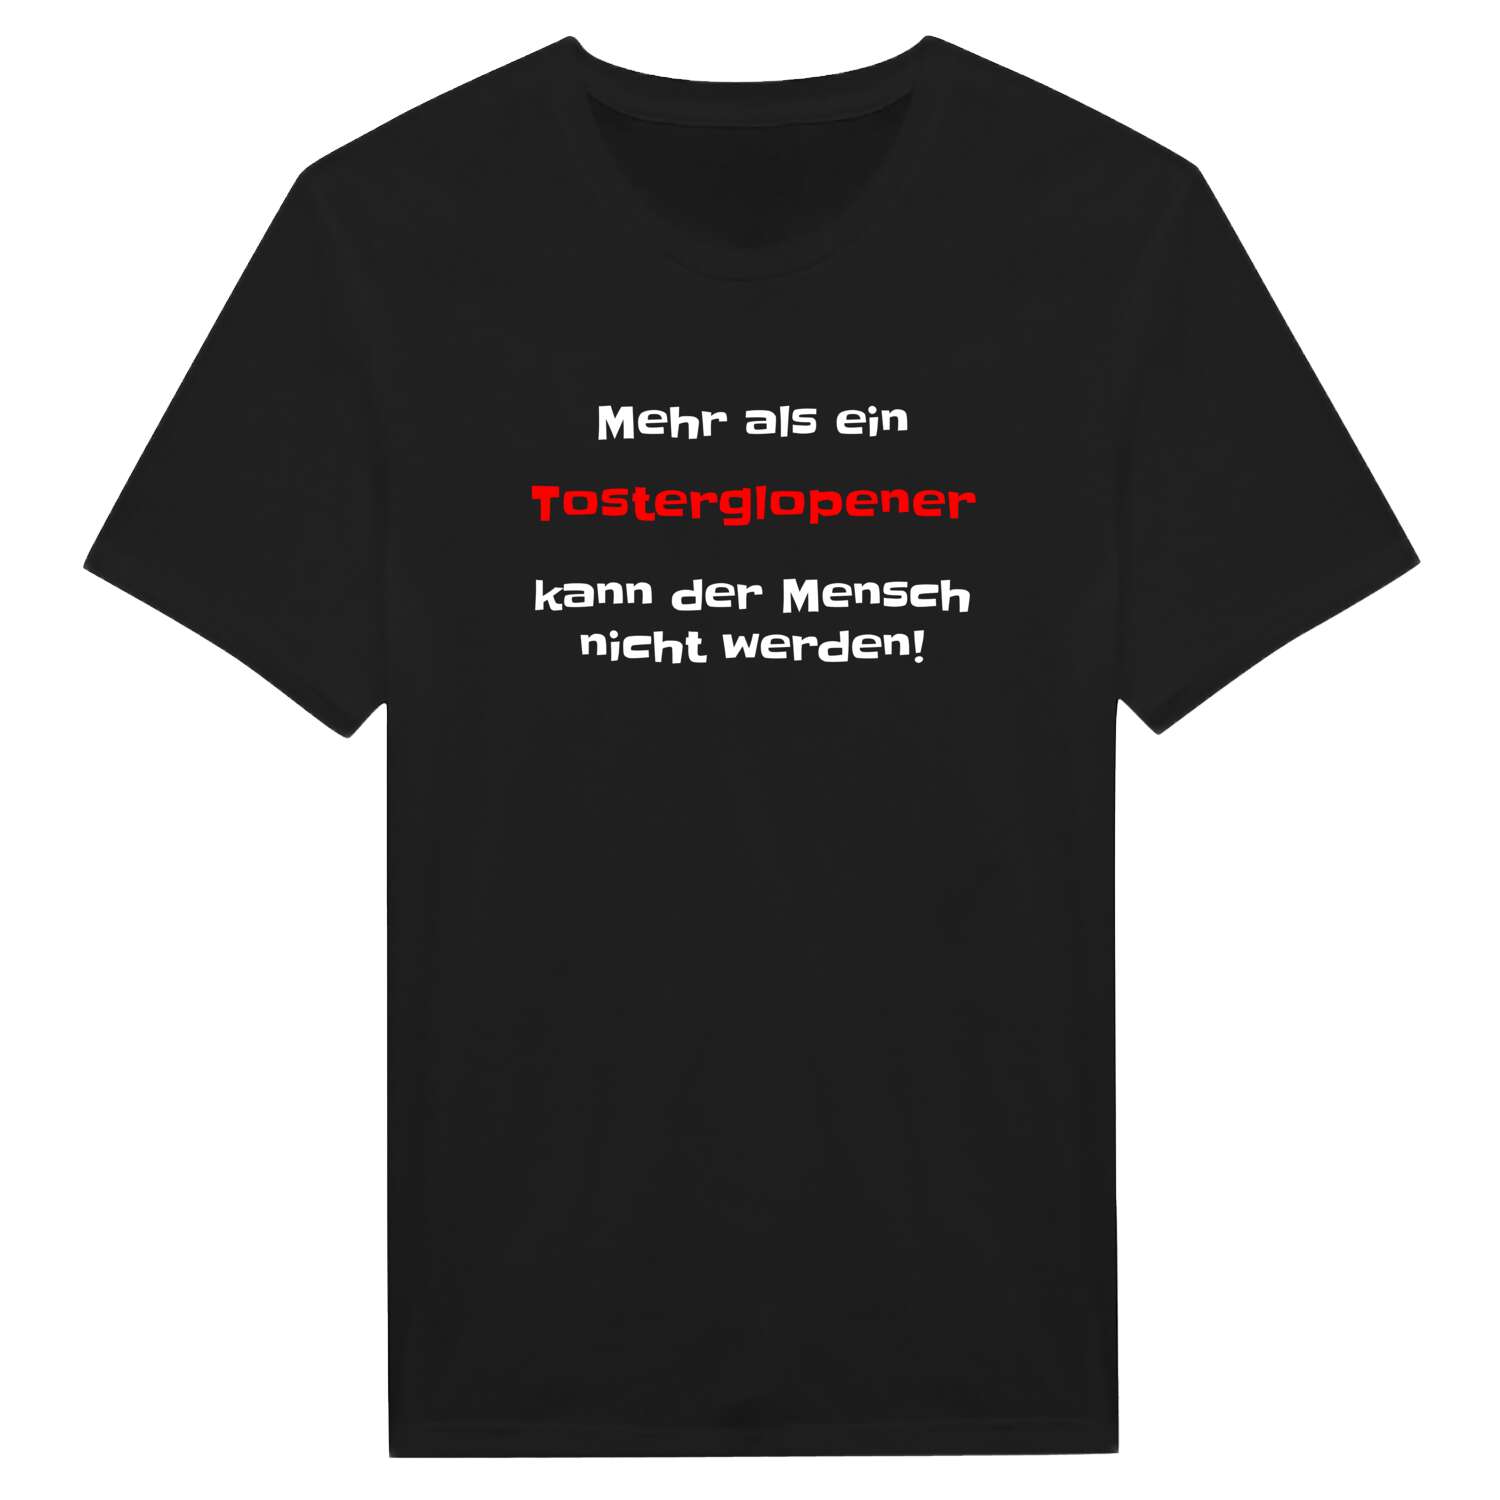 Tosterglope T-Shirt »Mehr als ein«